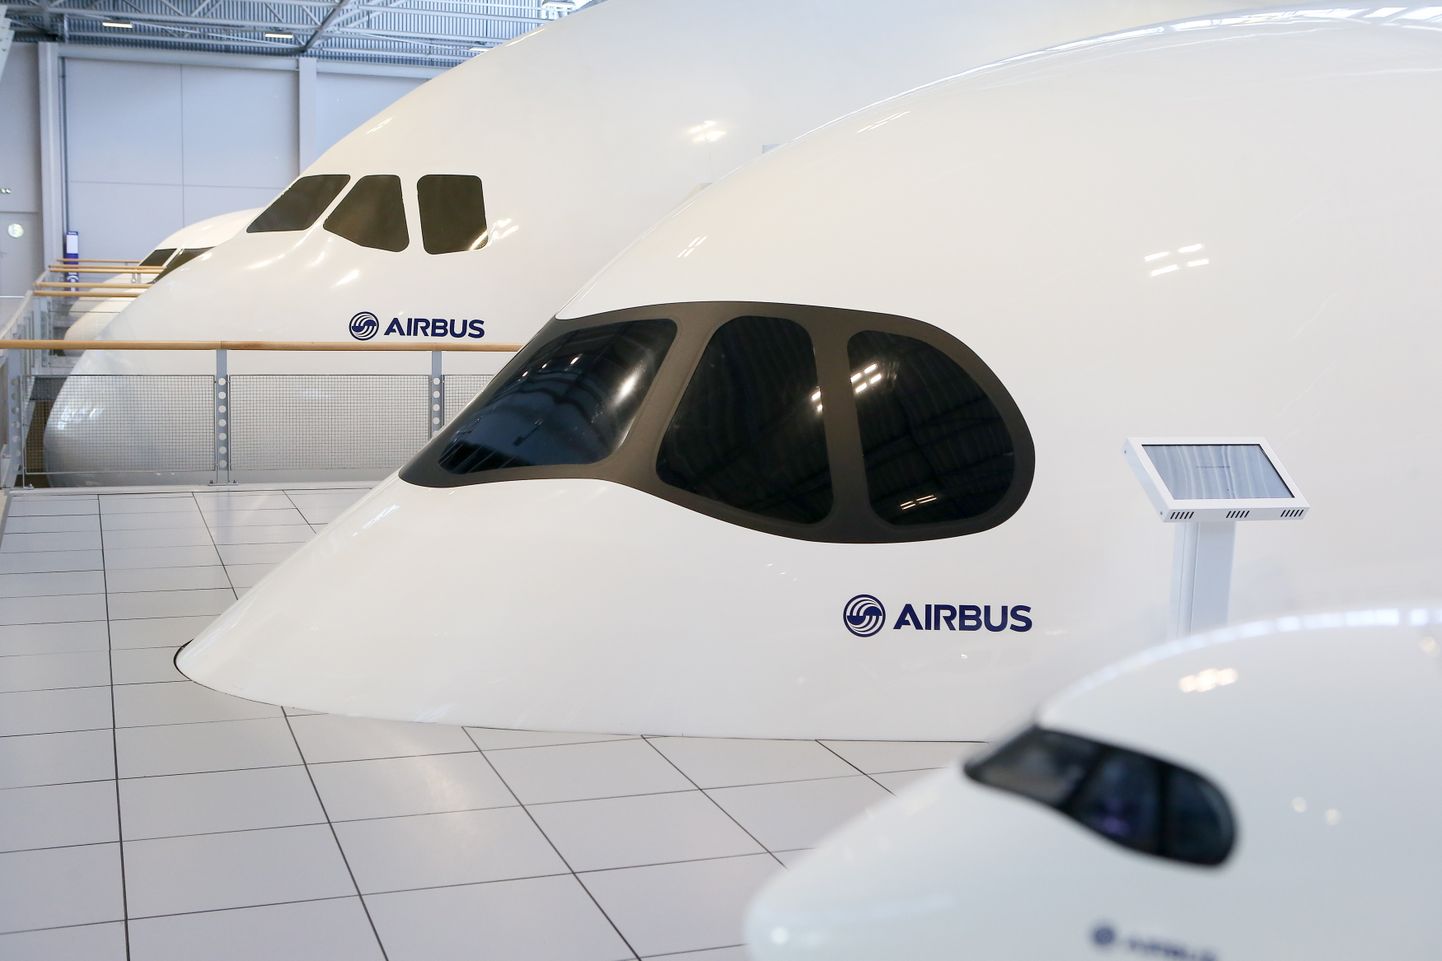 Airbus lennukite kered väljapanekul Prantsusmaal.